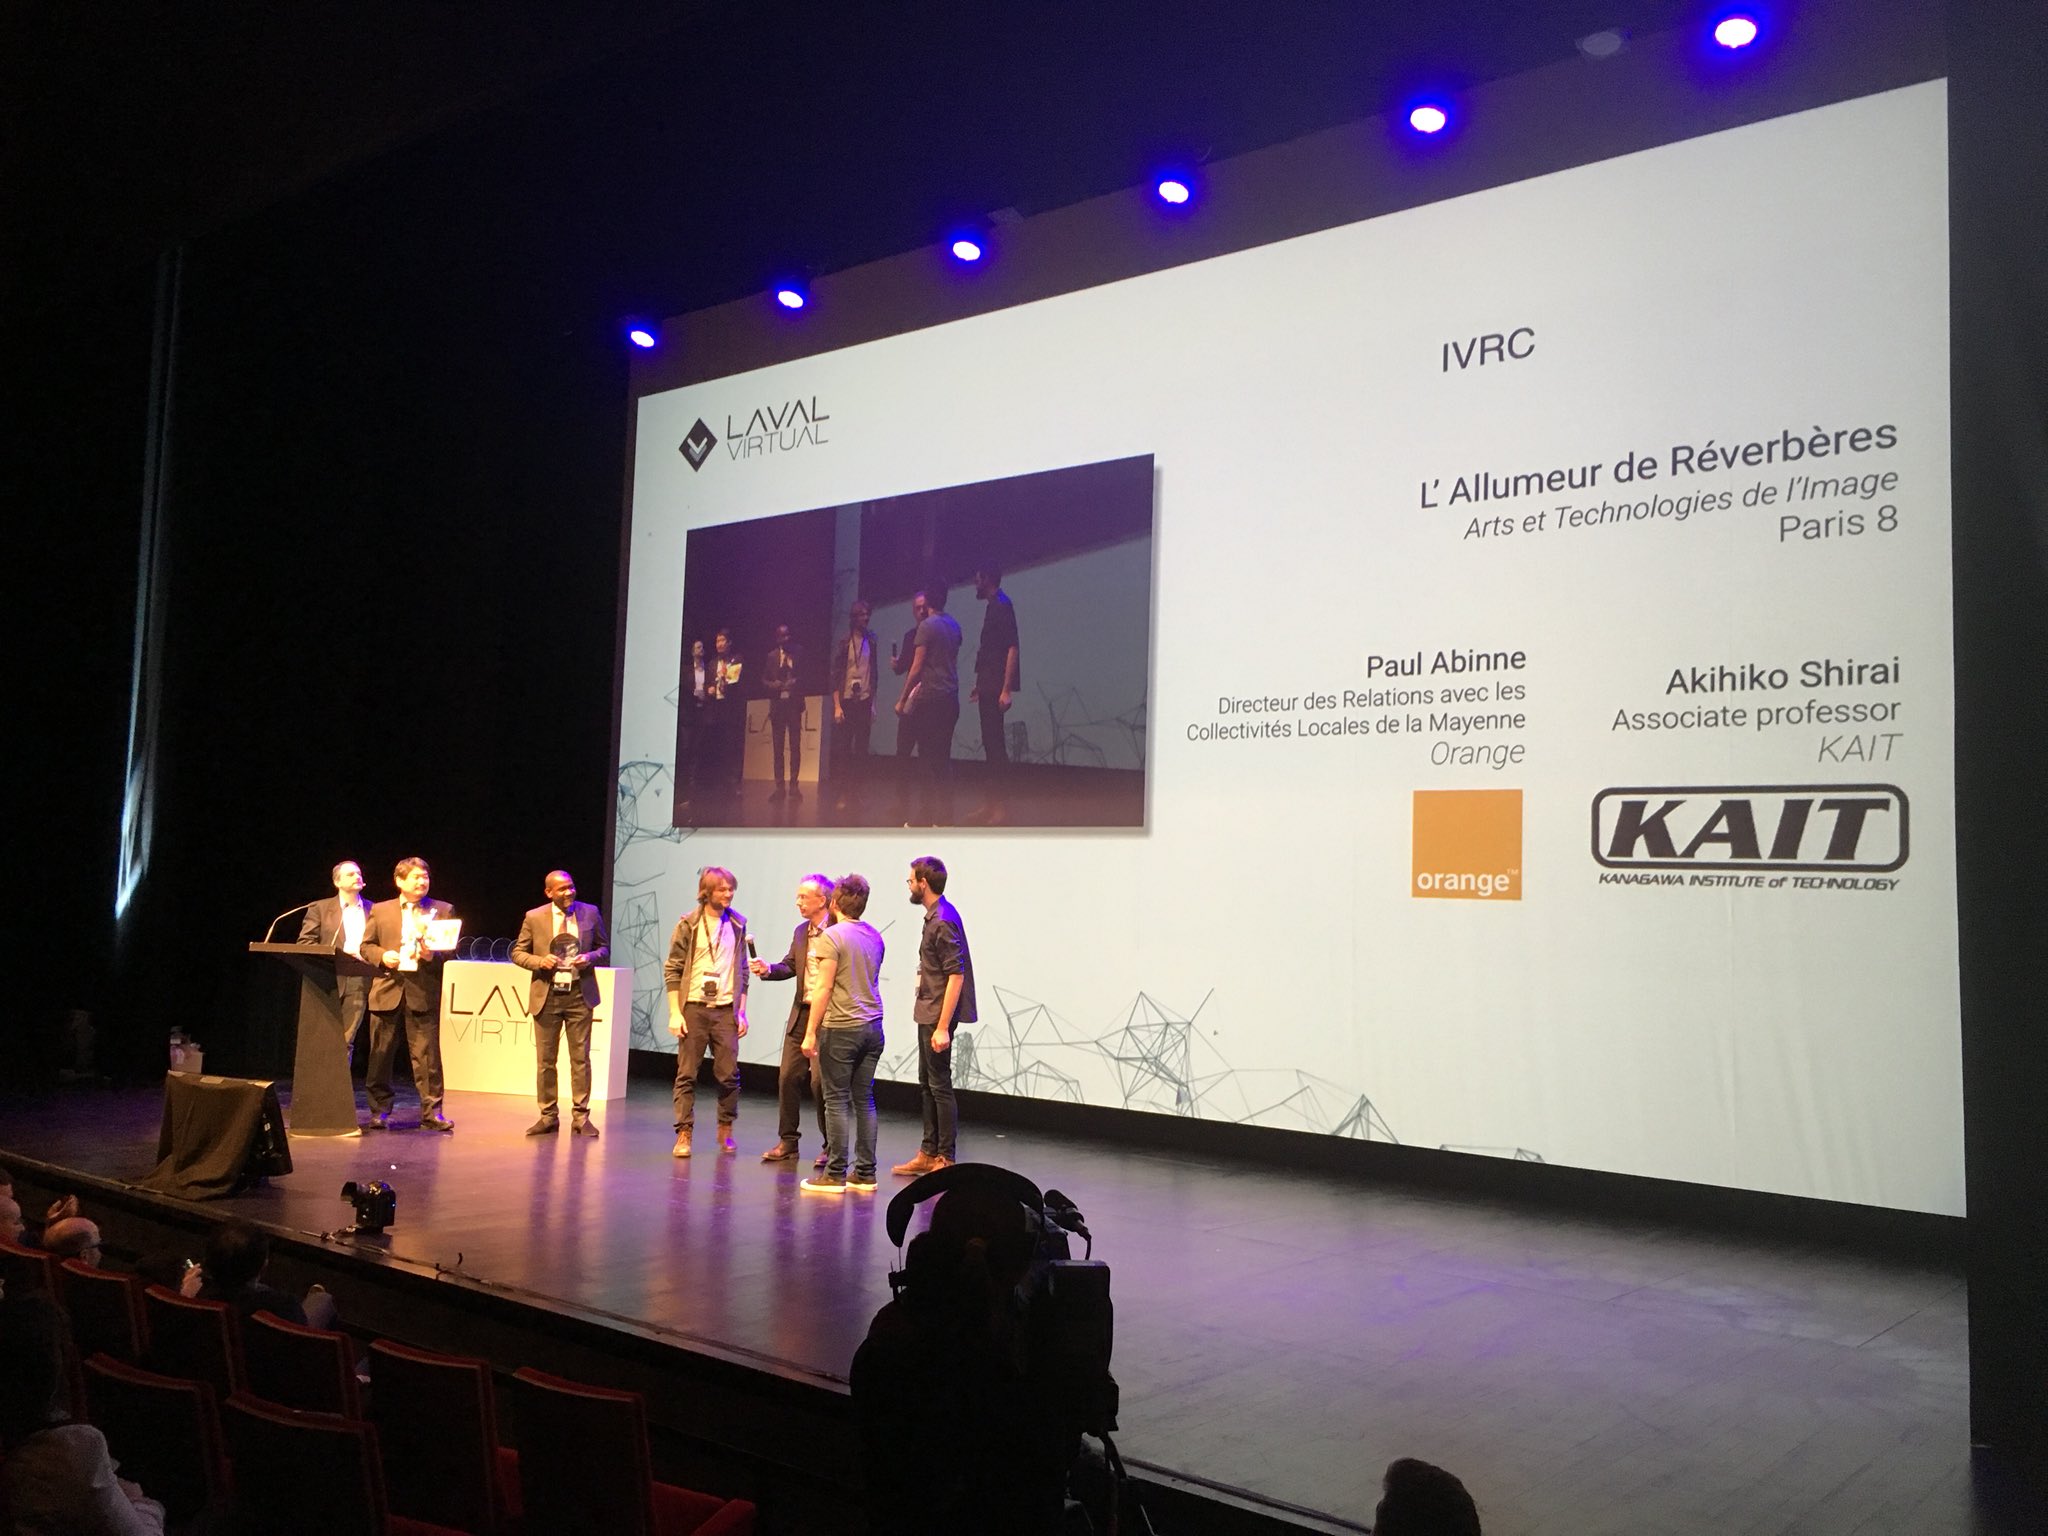 L'allumeur de réverbères awarded at Laval Virtual 2018